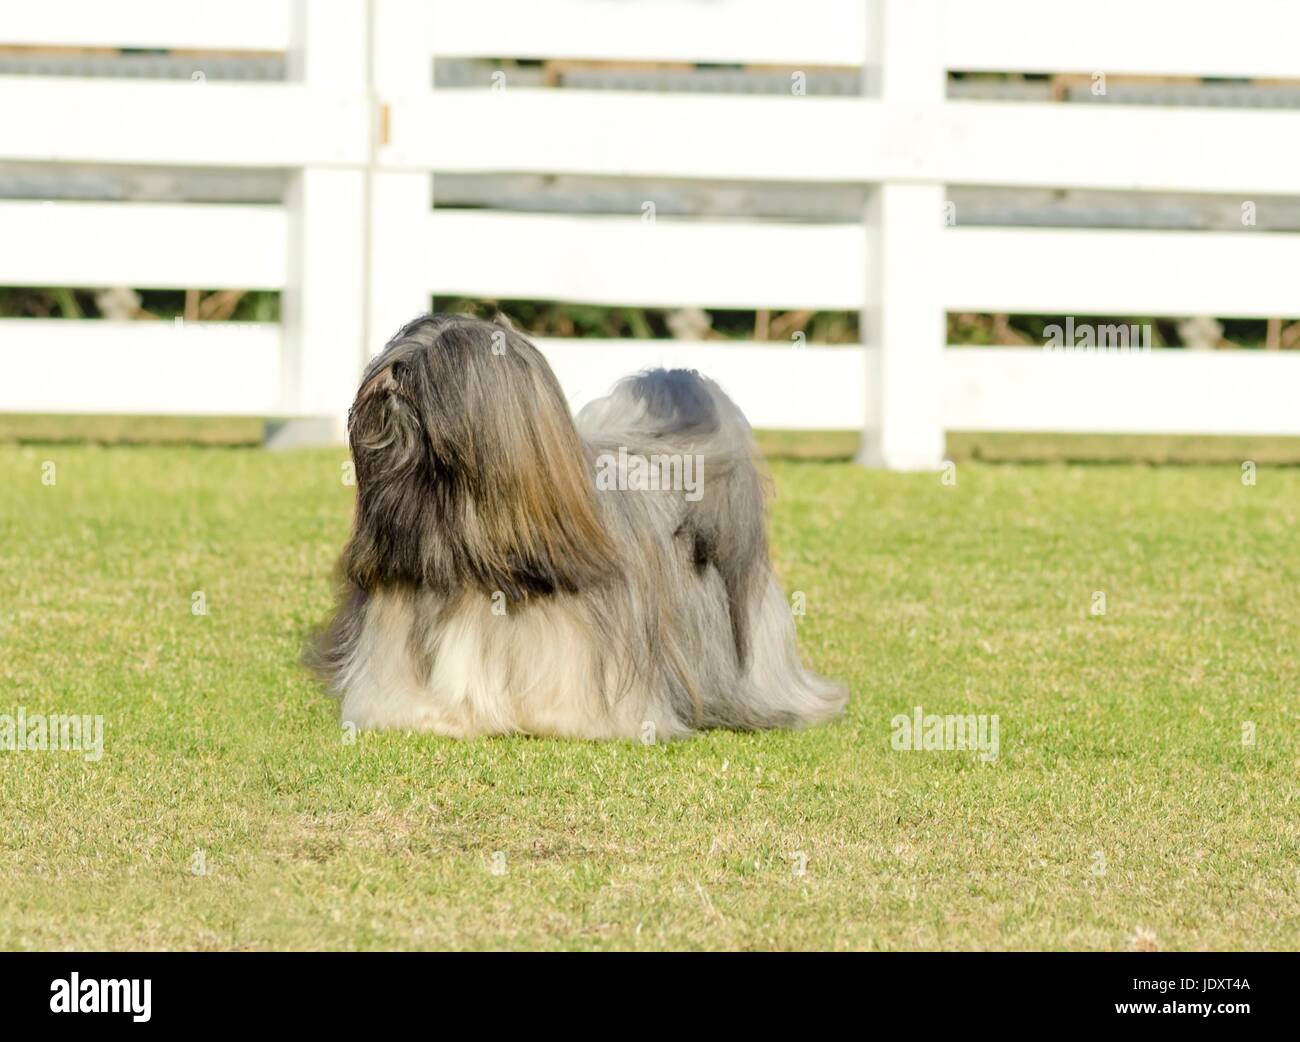 Un piccolo giovane di colore marrone chiaro, fulvo, beige, grigio e bianco Lhasa Apso cane con un lungo cappotto setosa in piedi sull'erba. I capelli lunghi e la barba Lasa cane ha pesanti dritto lungo cappotto e è un cane da compagnia. Foto Stock